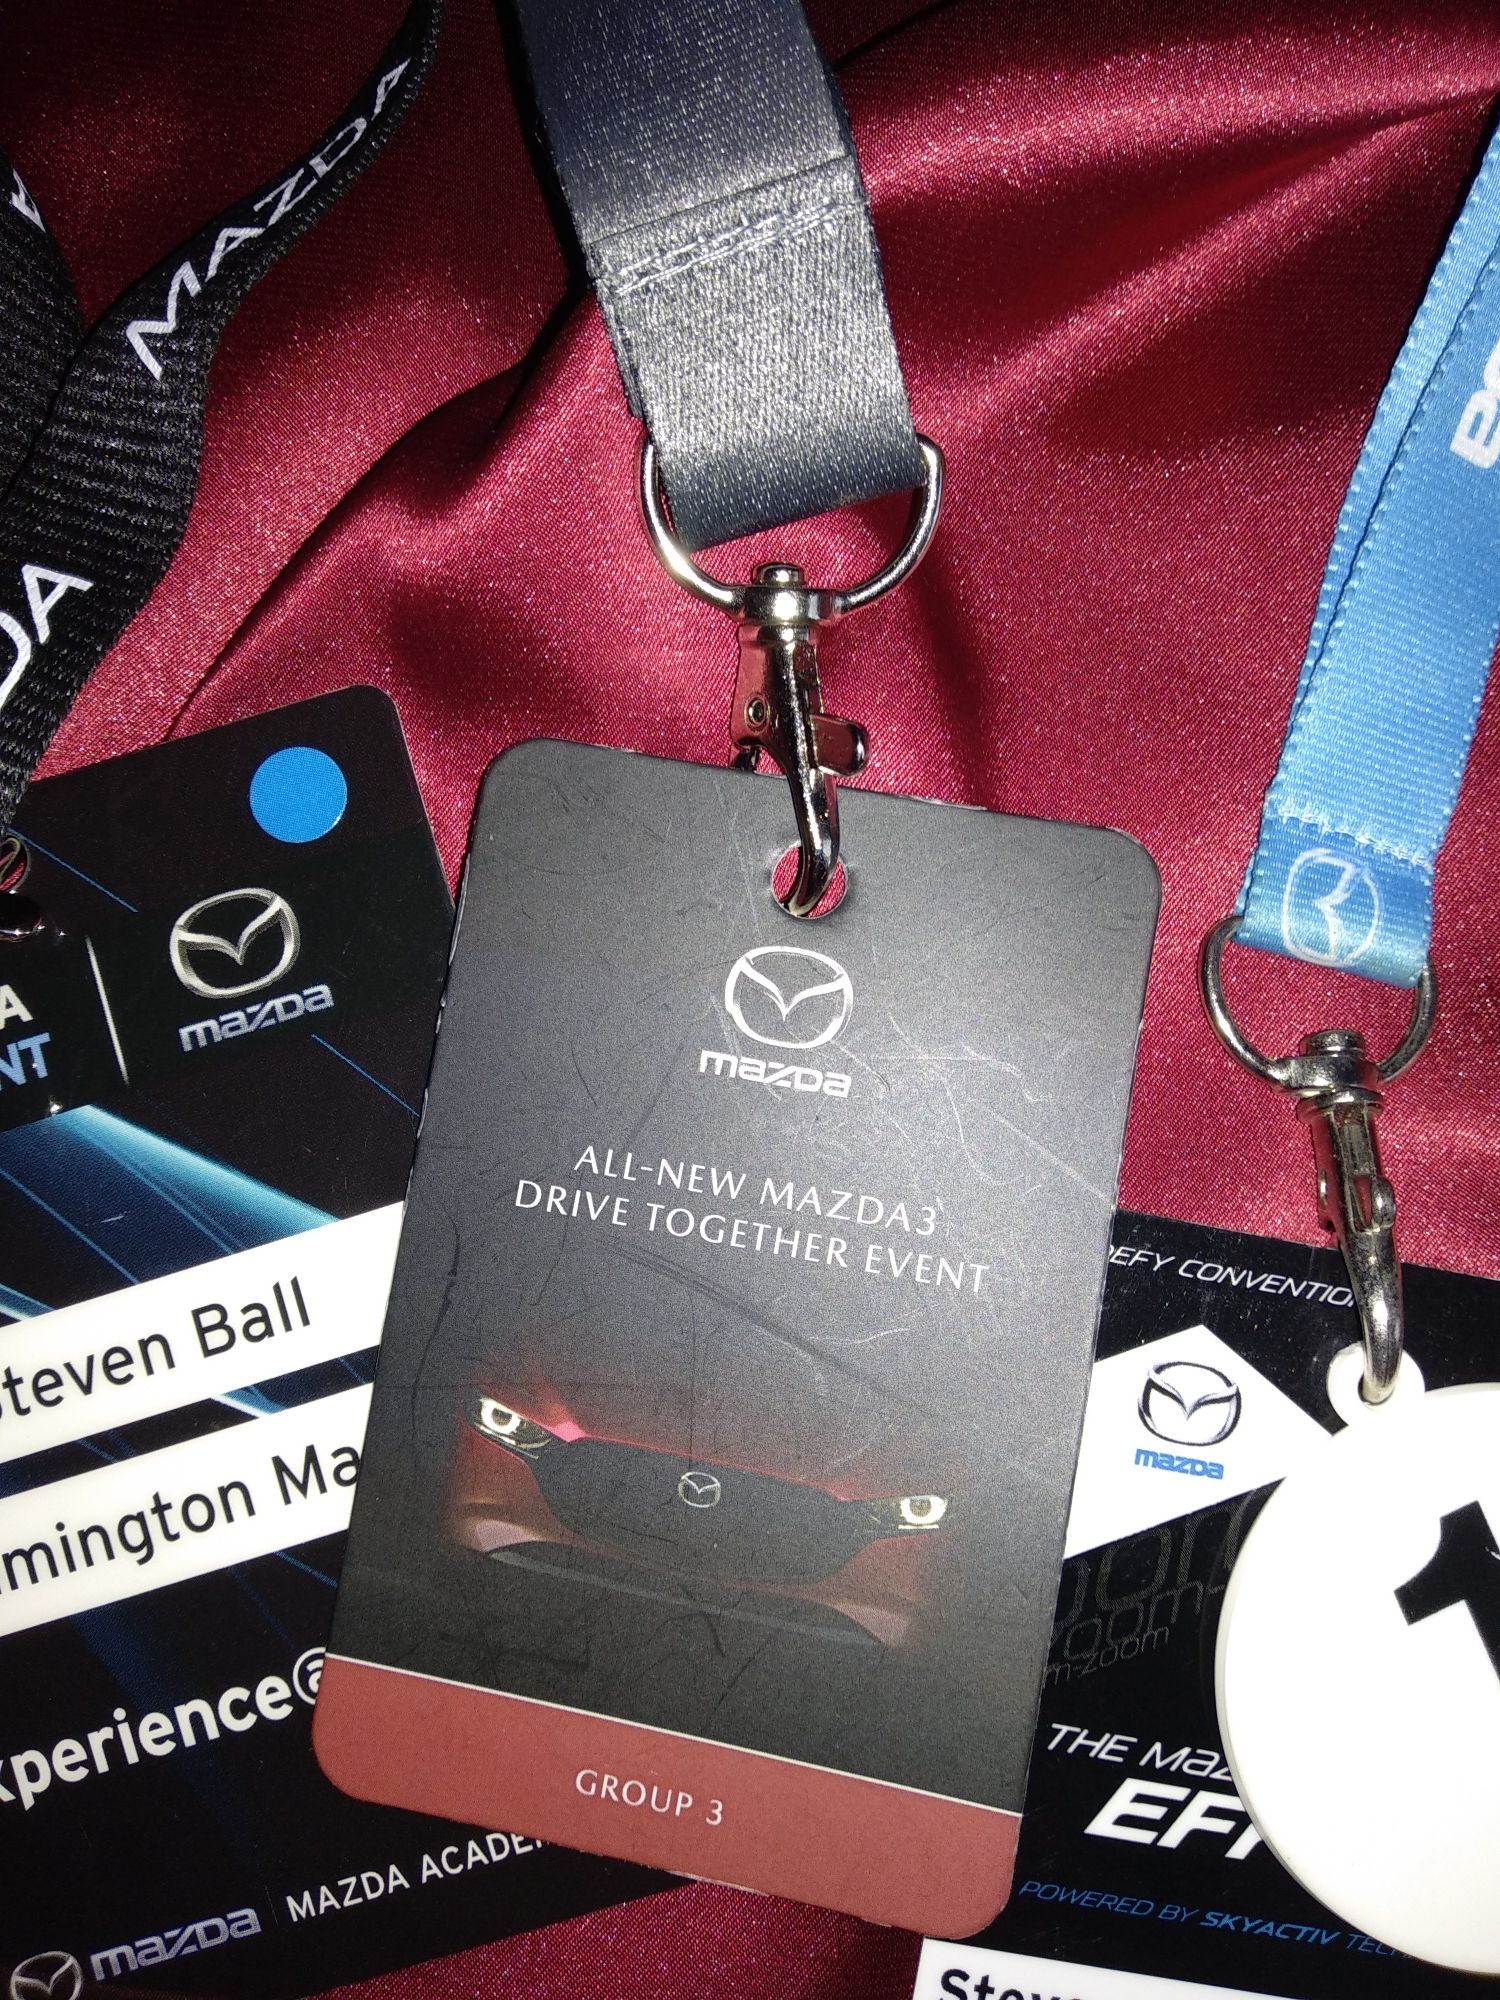 Ремешок для ключей Mazda, флешки,  удостоверения личности и билетов